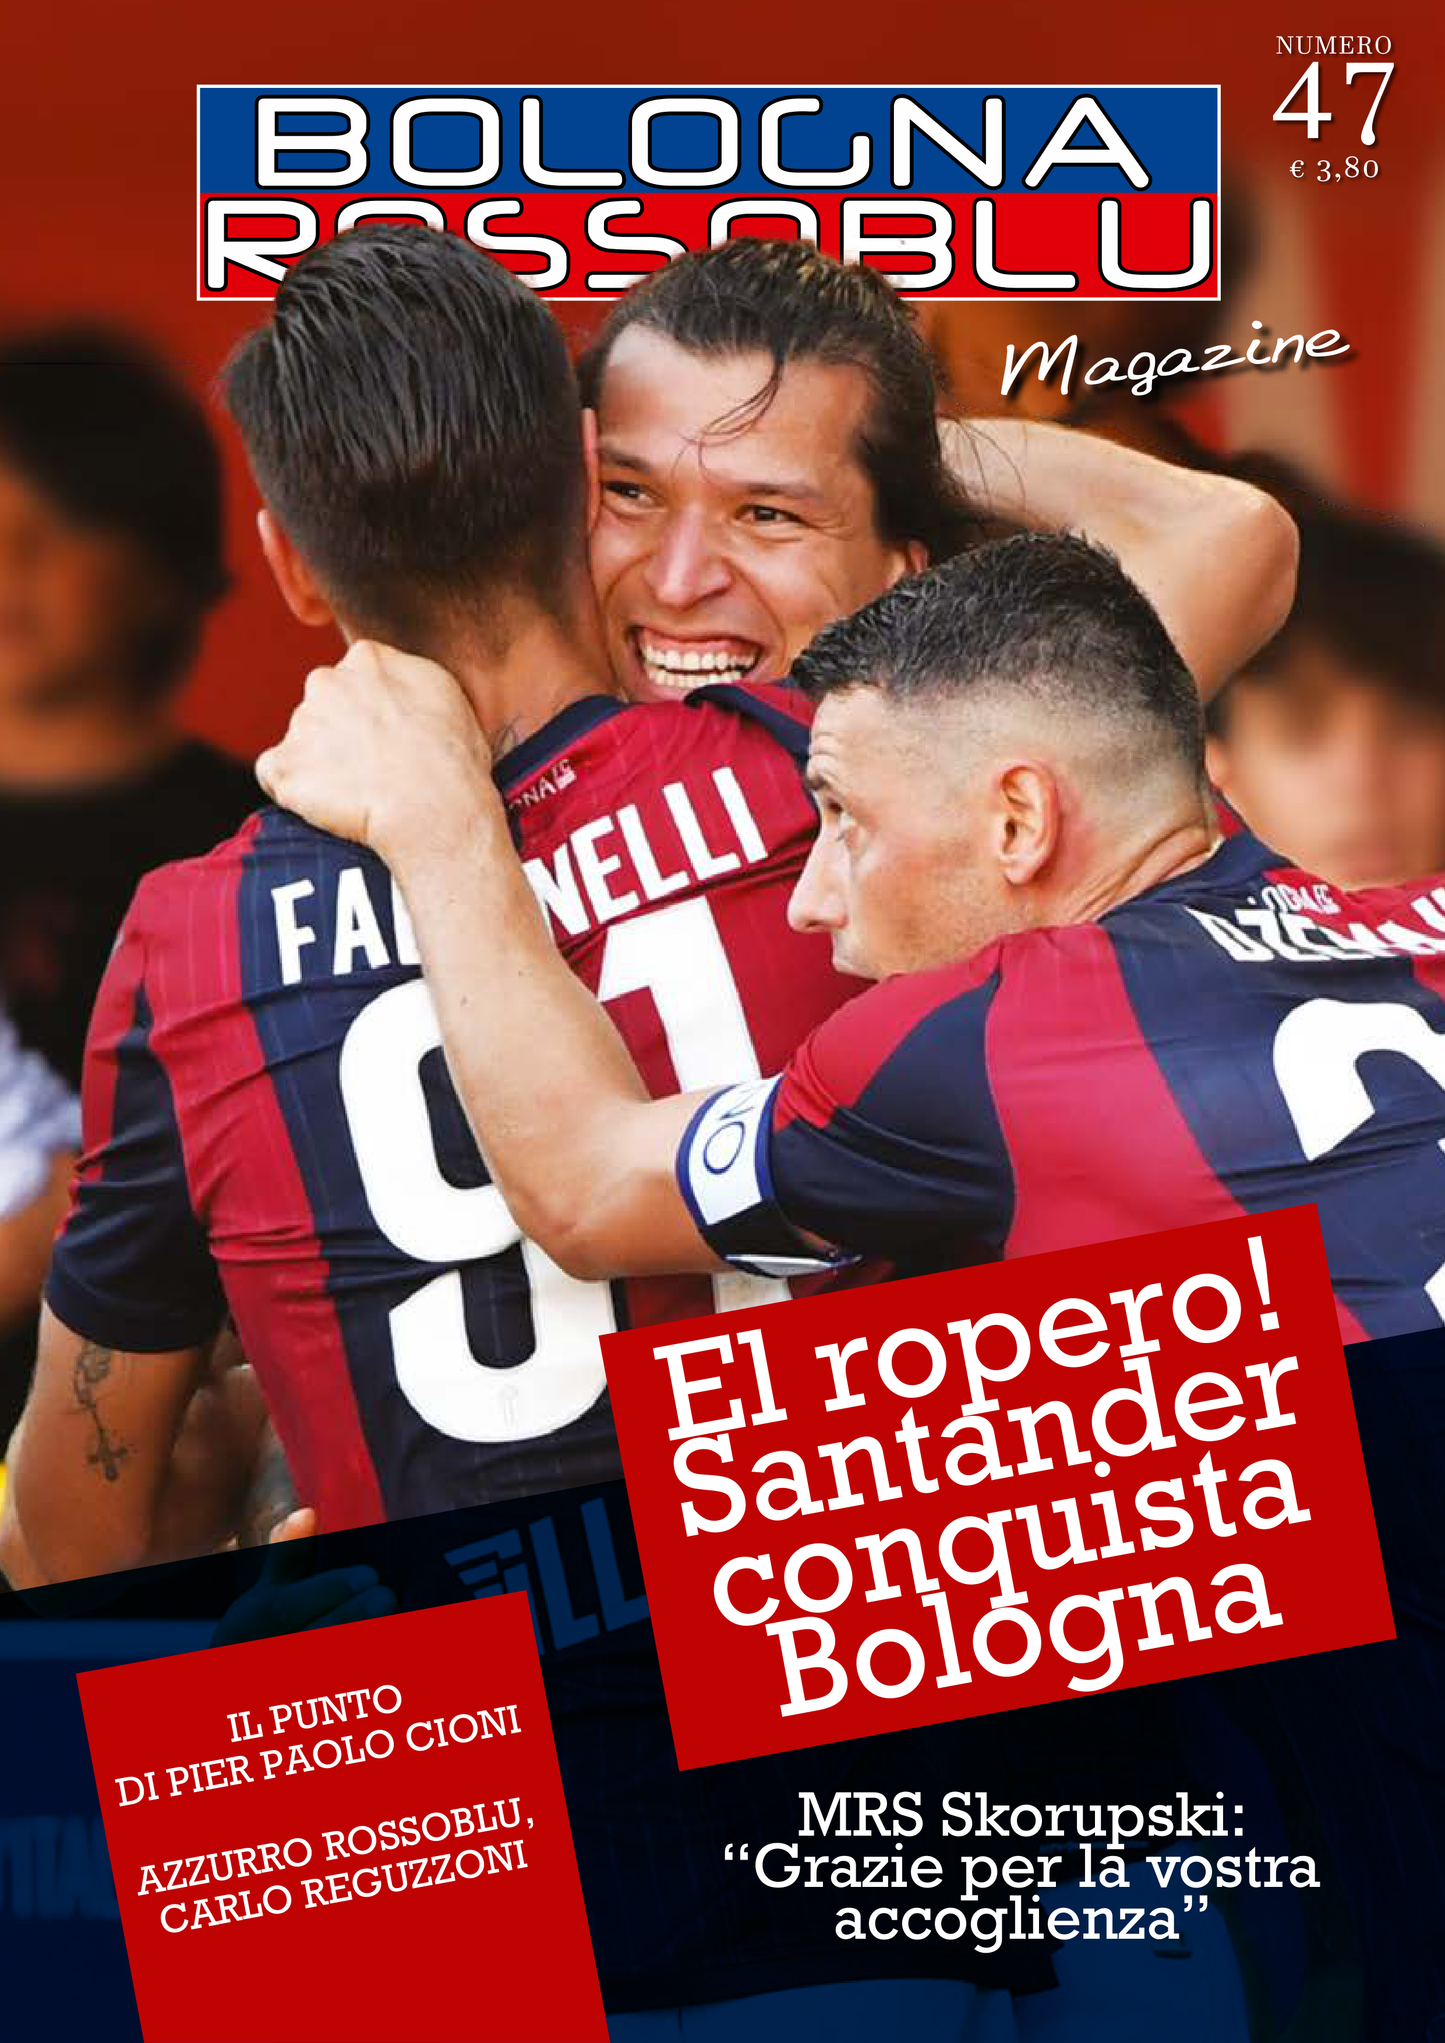 Magazine Bologna Rossoblu n° 47